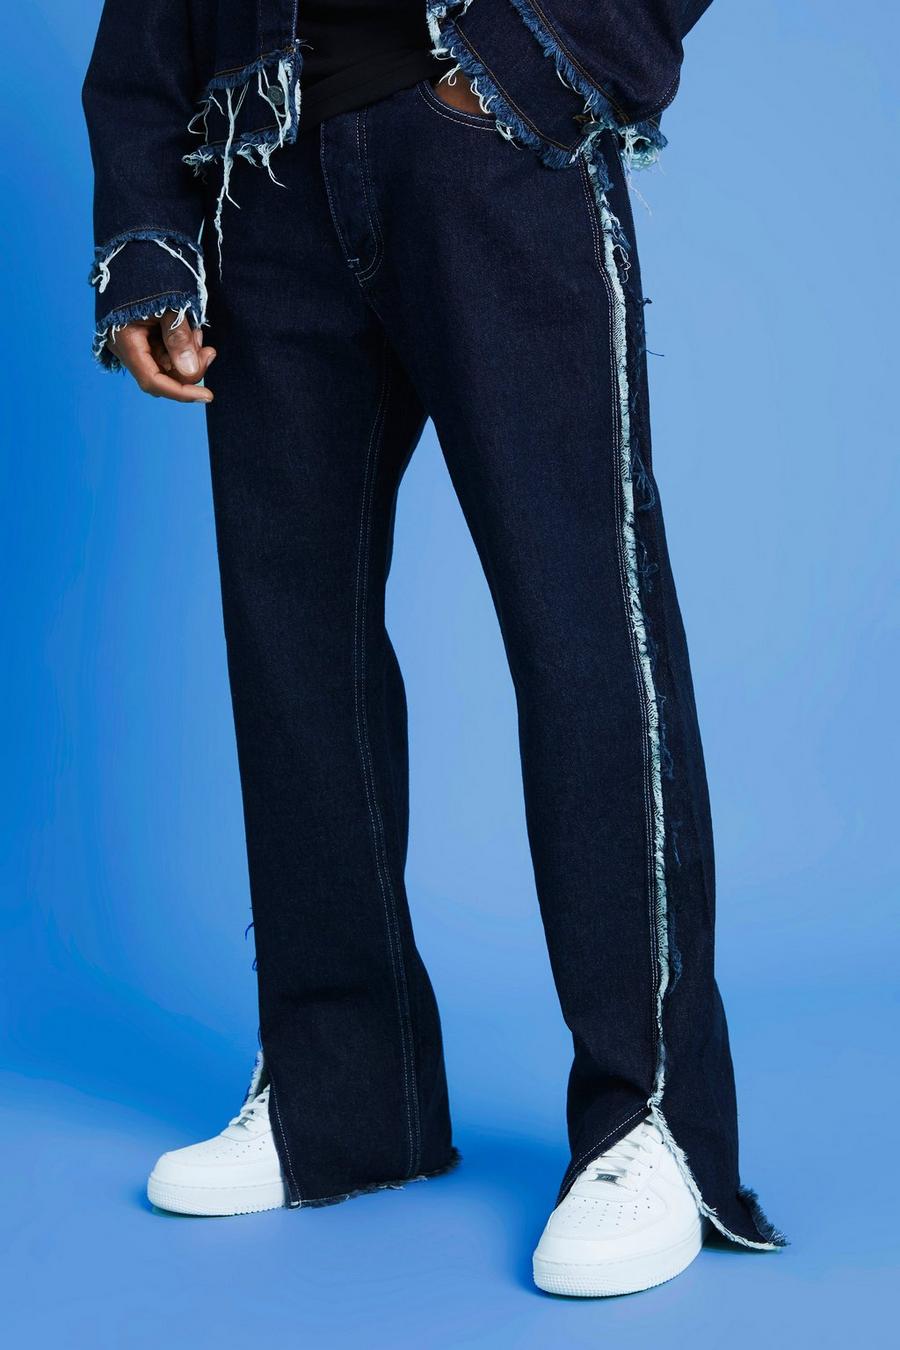 Lockere Jeans mit ausgefranstem Saum und geteiltem Saum, Indigo